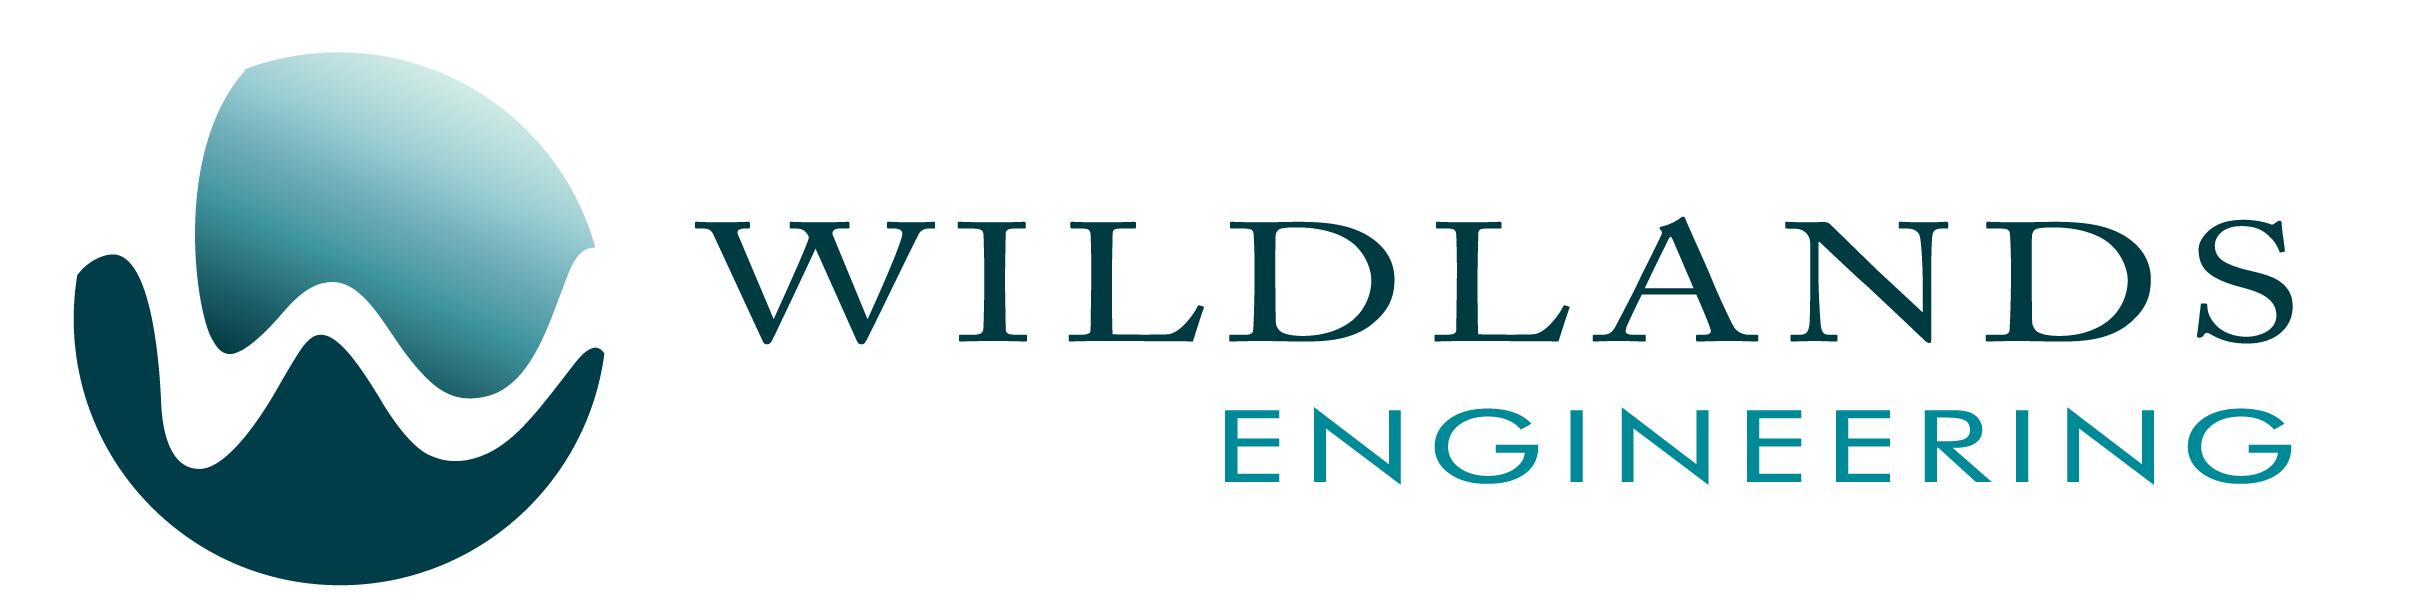 Wildlands Engineering Seeks Engineering Summer Intern